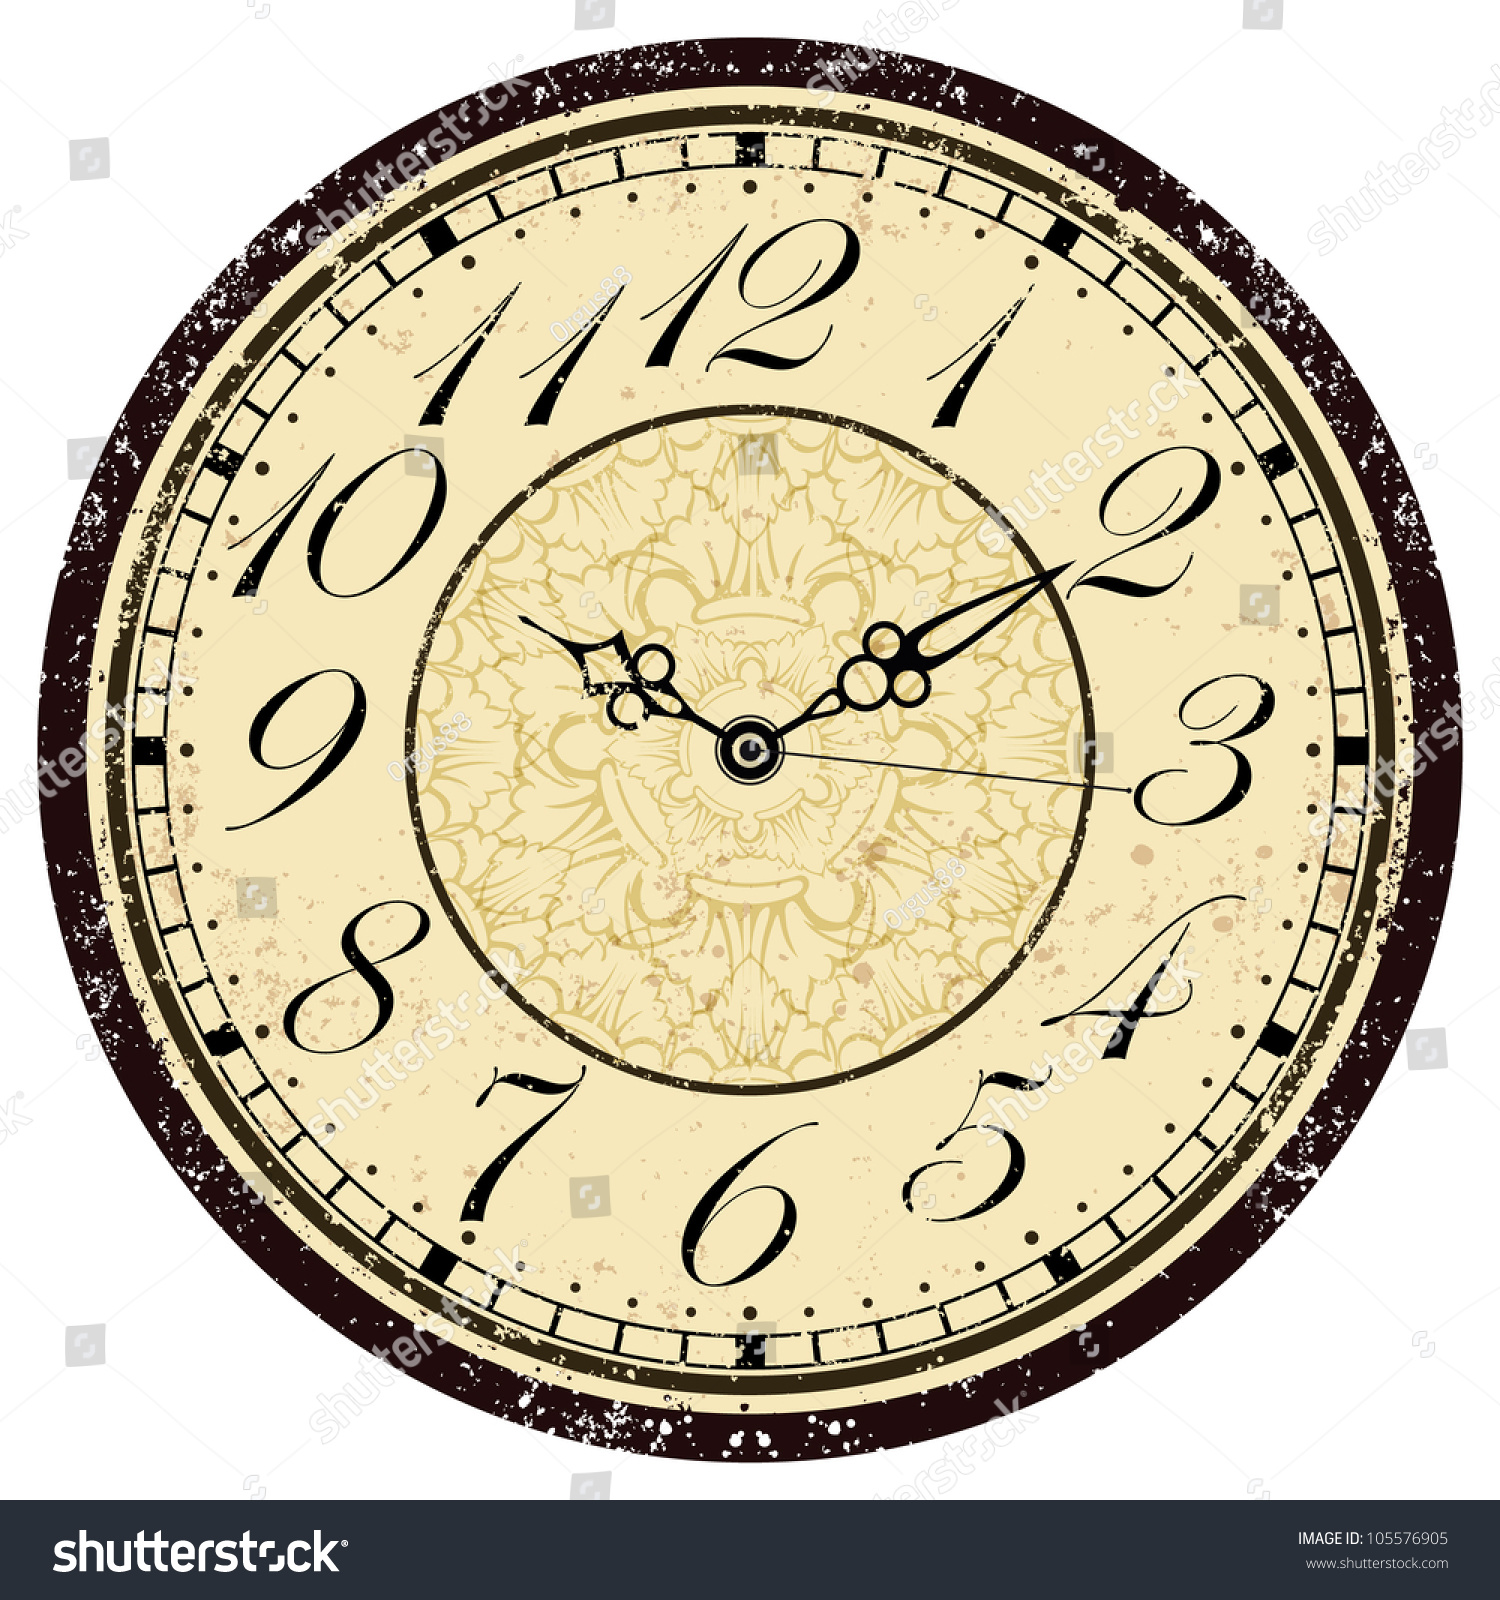 Grunge Old Vintage Clock Face Stock Vector Illustration 105576905 ...